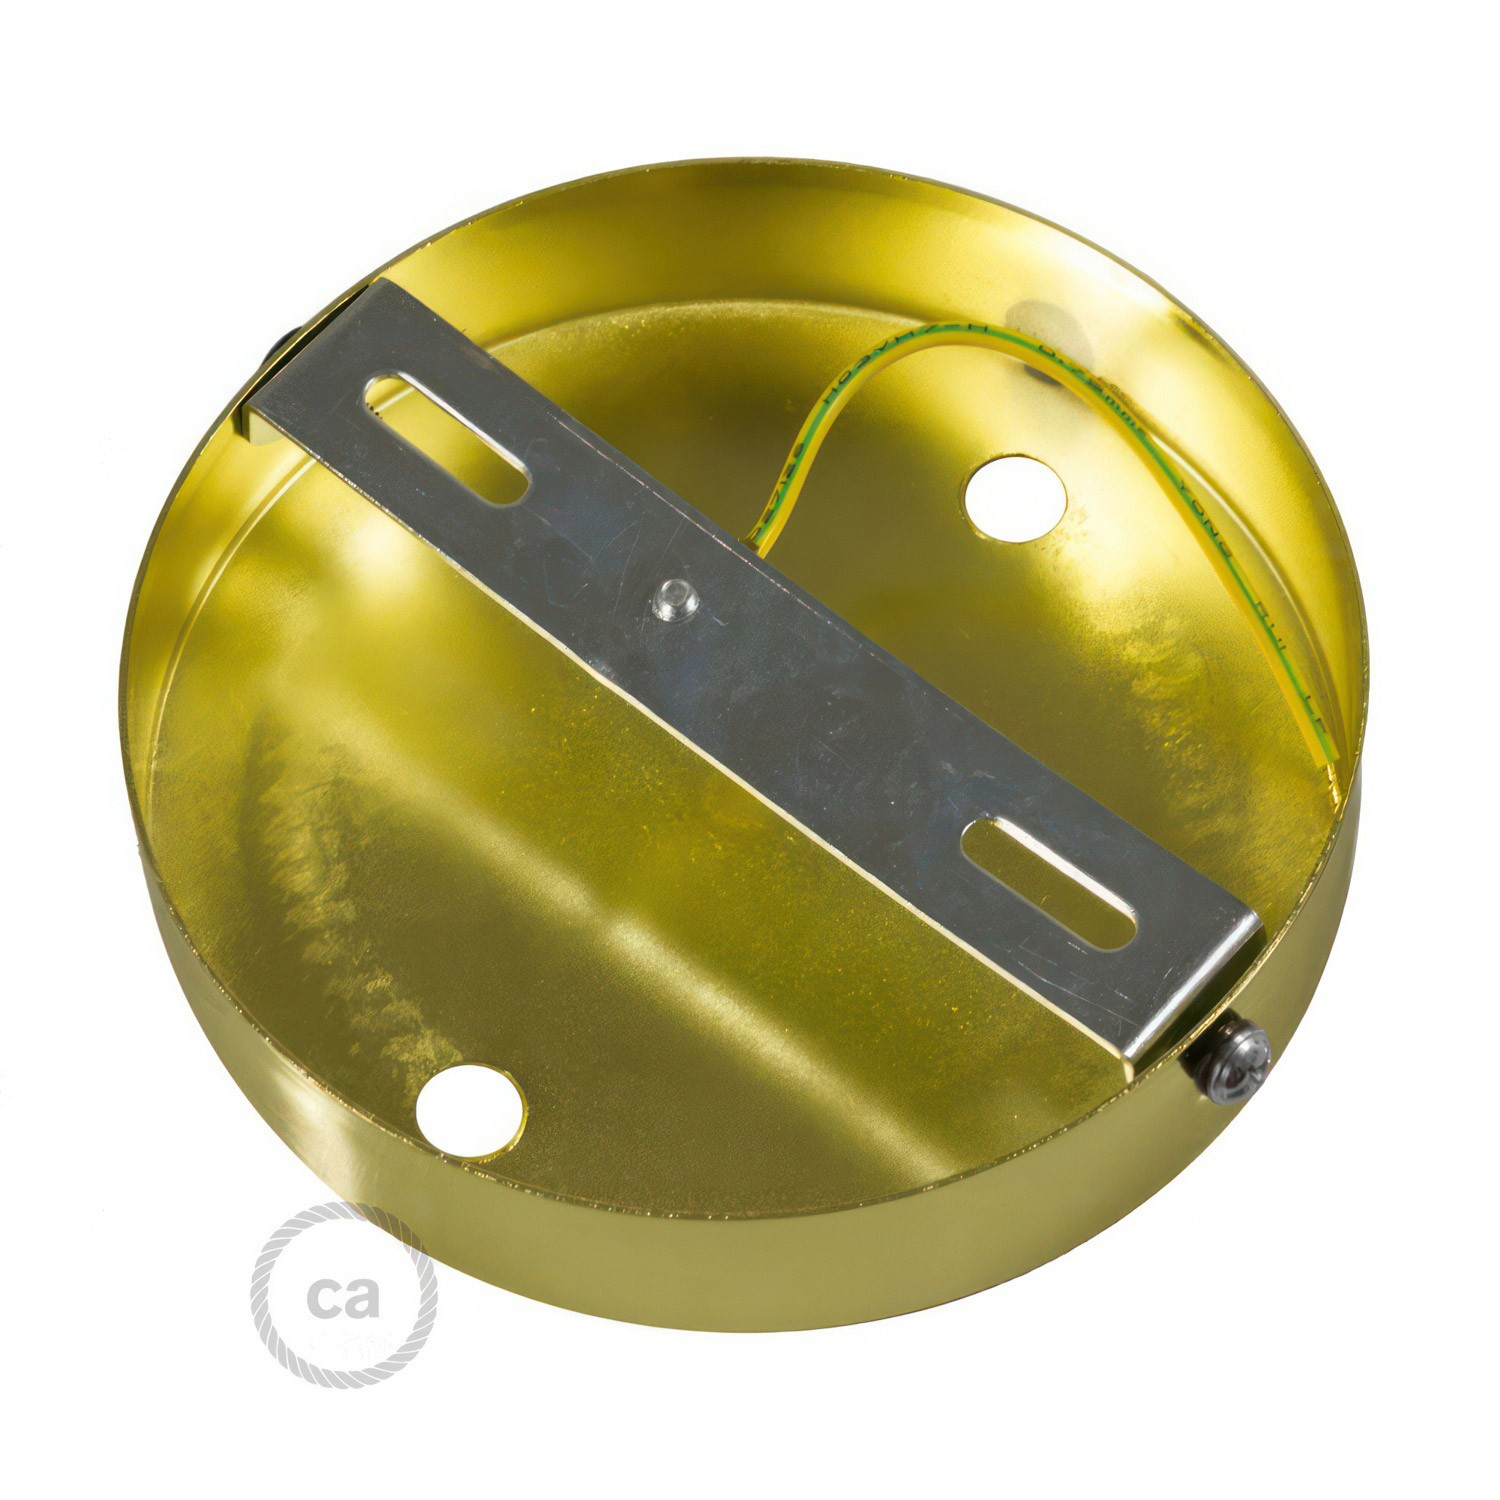 Zylindrischer 2-Loch-Lampenbaldachin Kit aus Metall